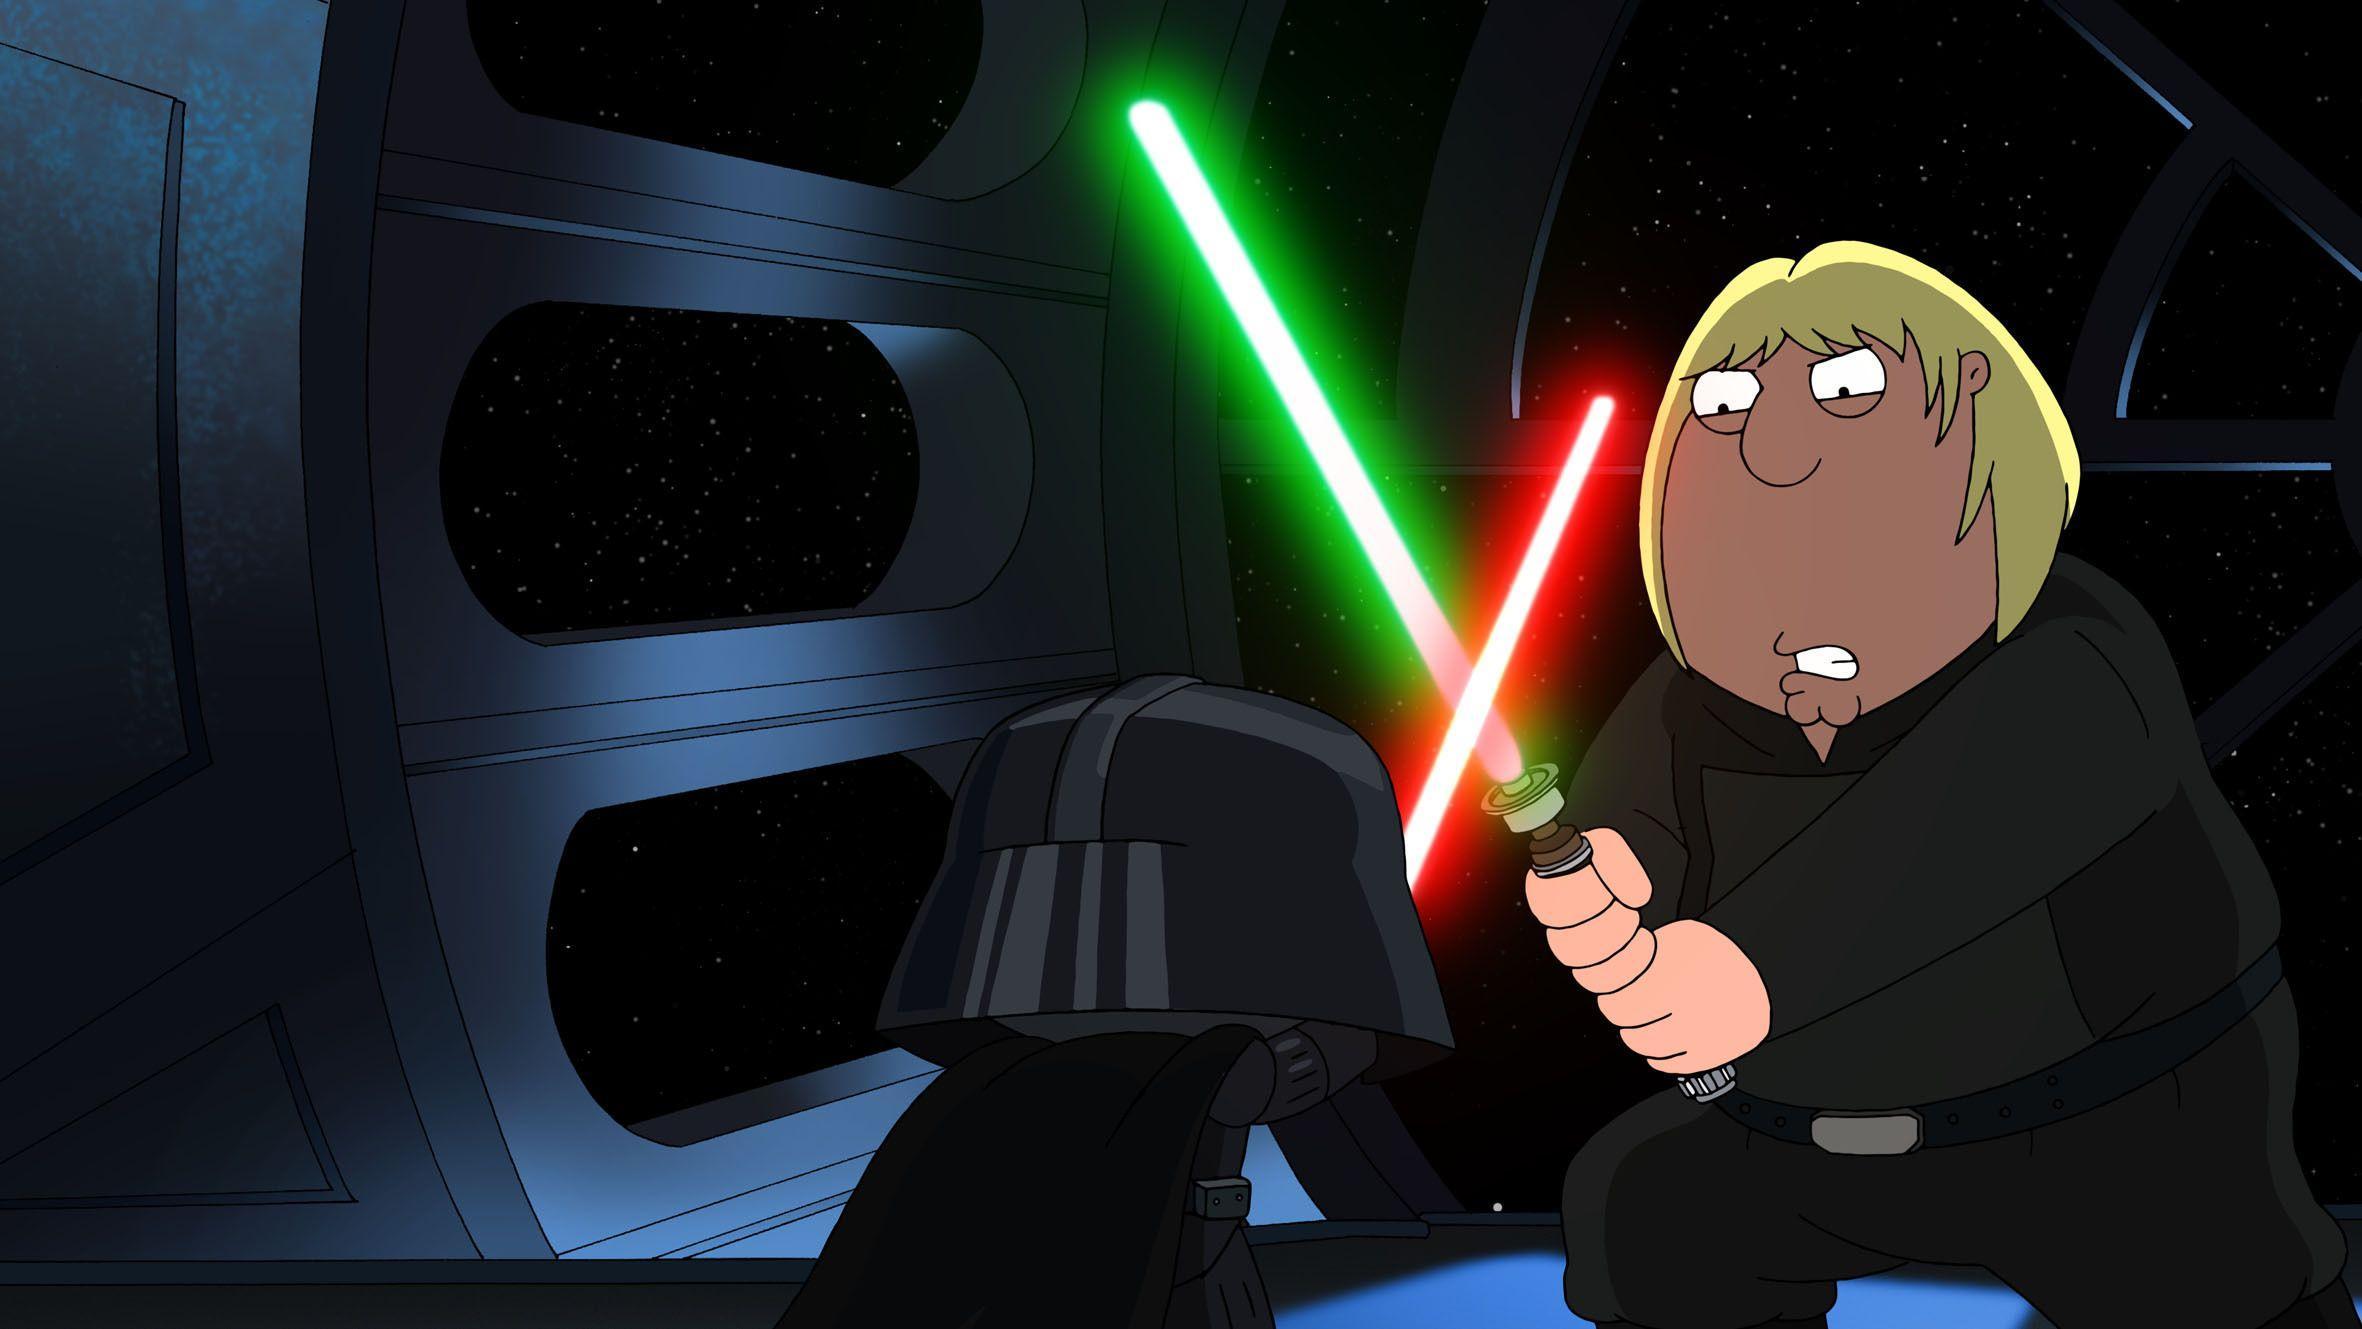 Family Guy Star Wars Wallpaper